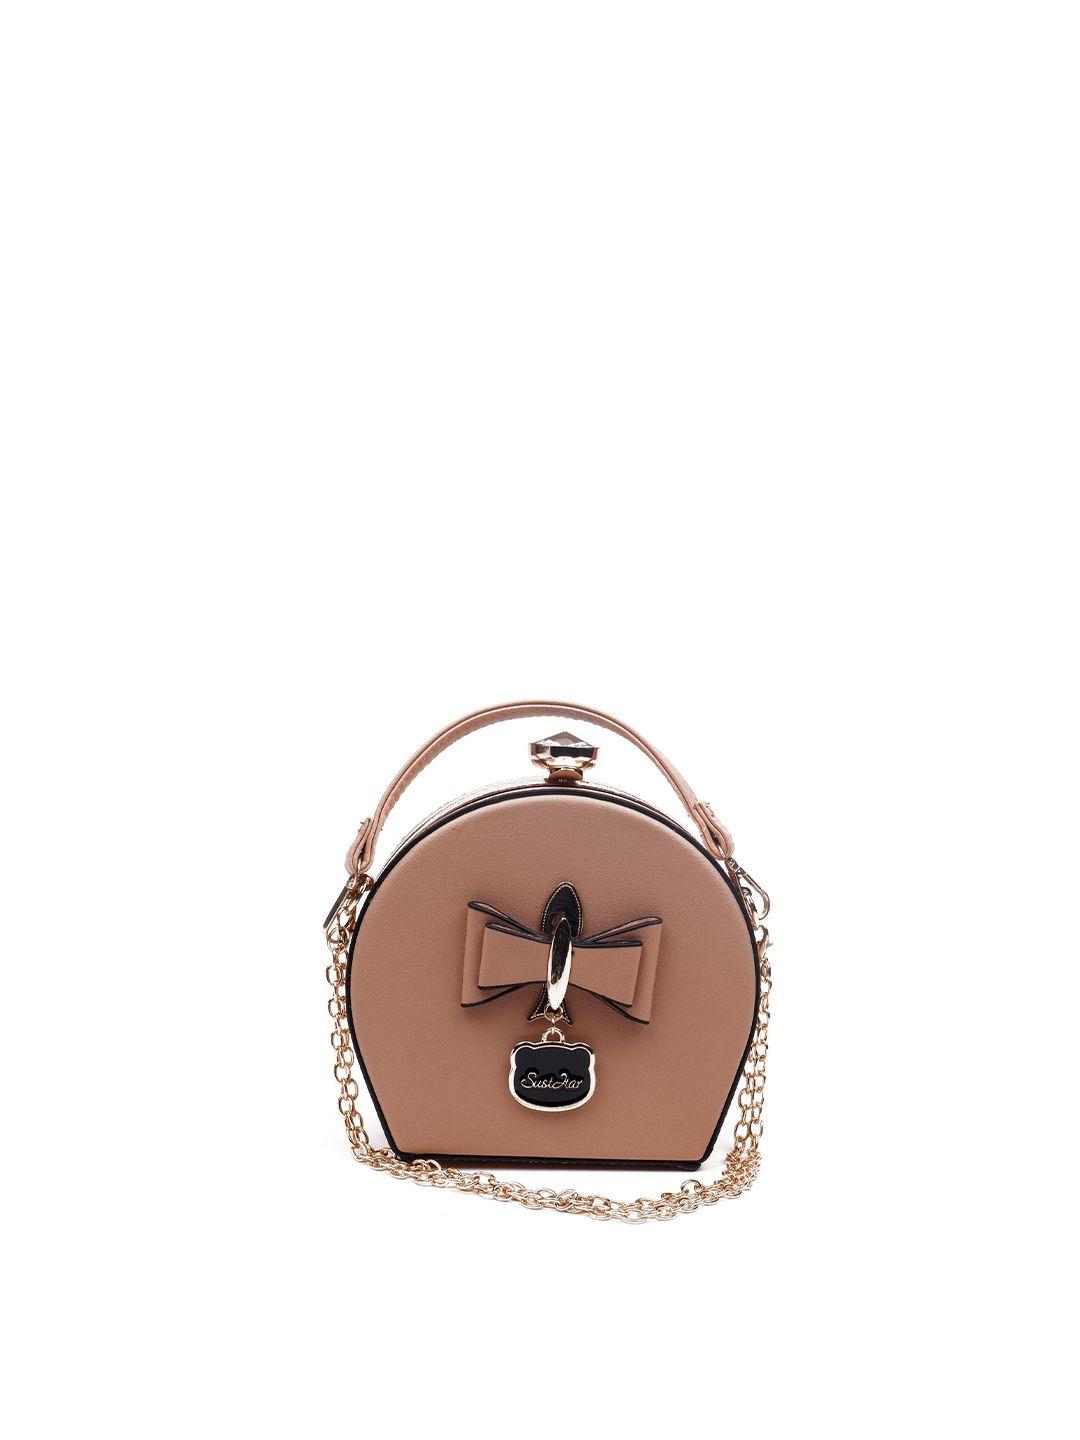 odette embellished purse clutch